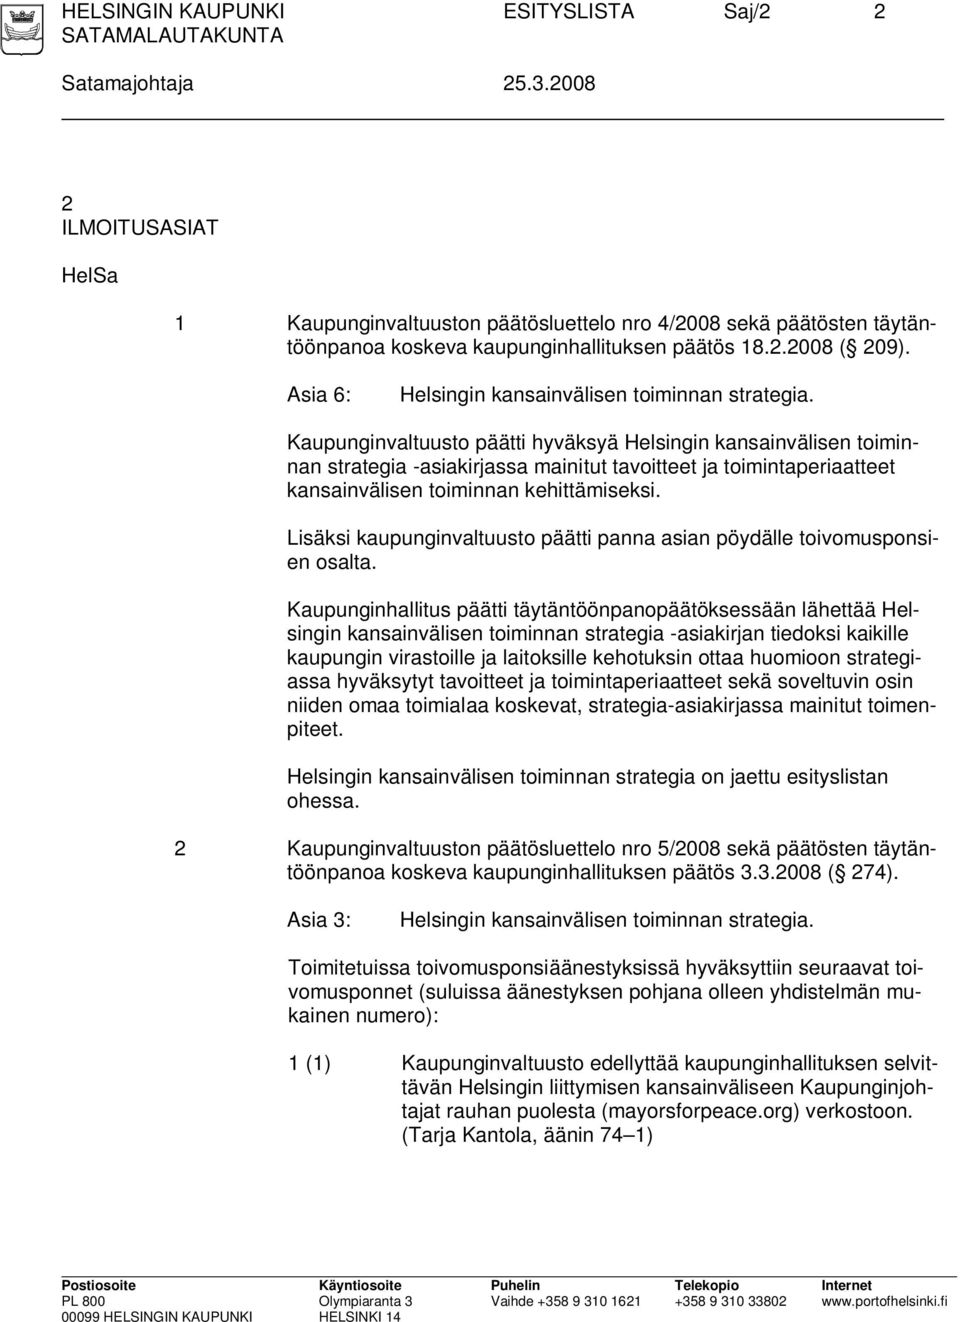 Asia 6: Helsingin kansainvälisen toiminnan strategia.